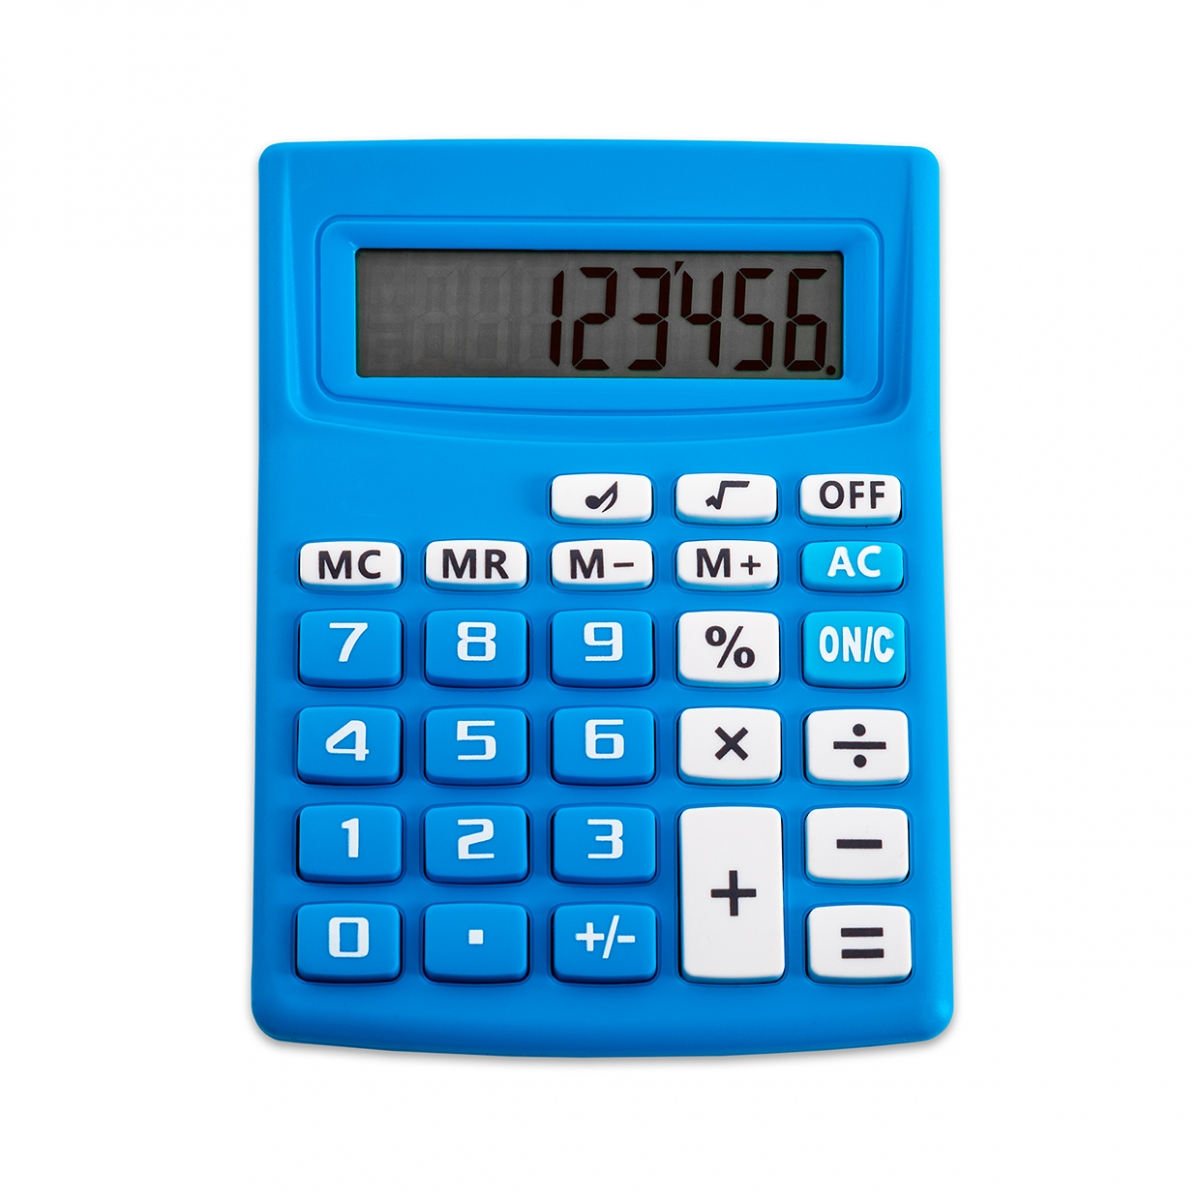 Imagen en la que se ve una calculadora